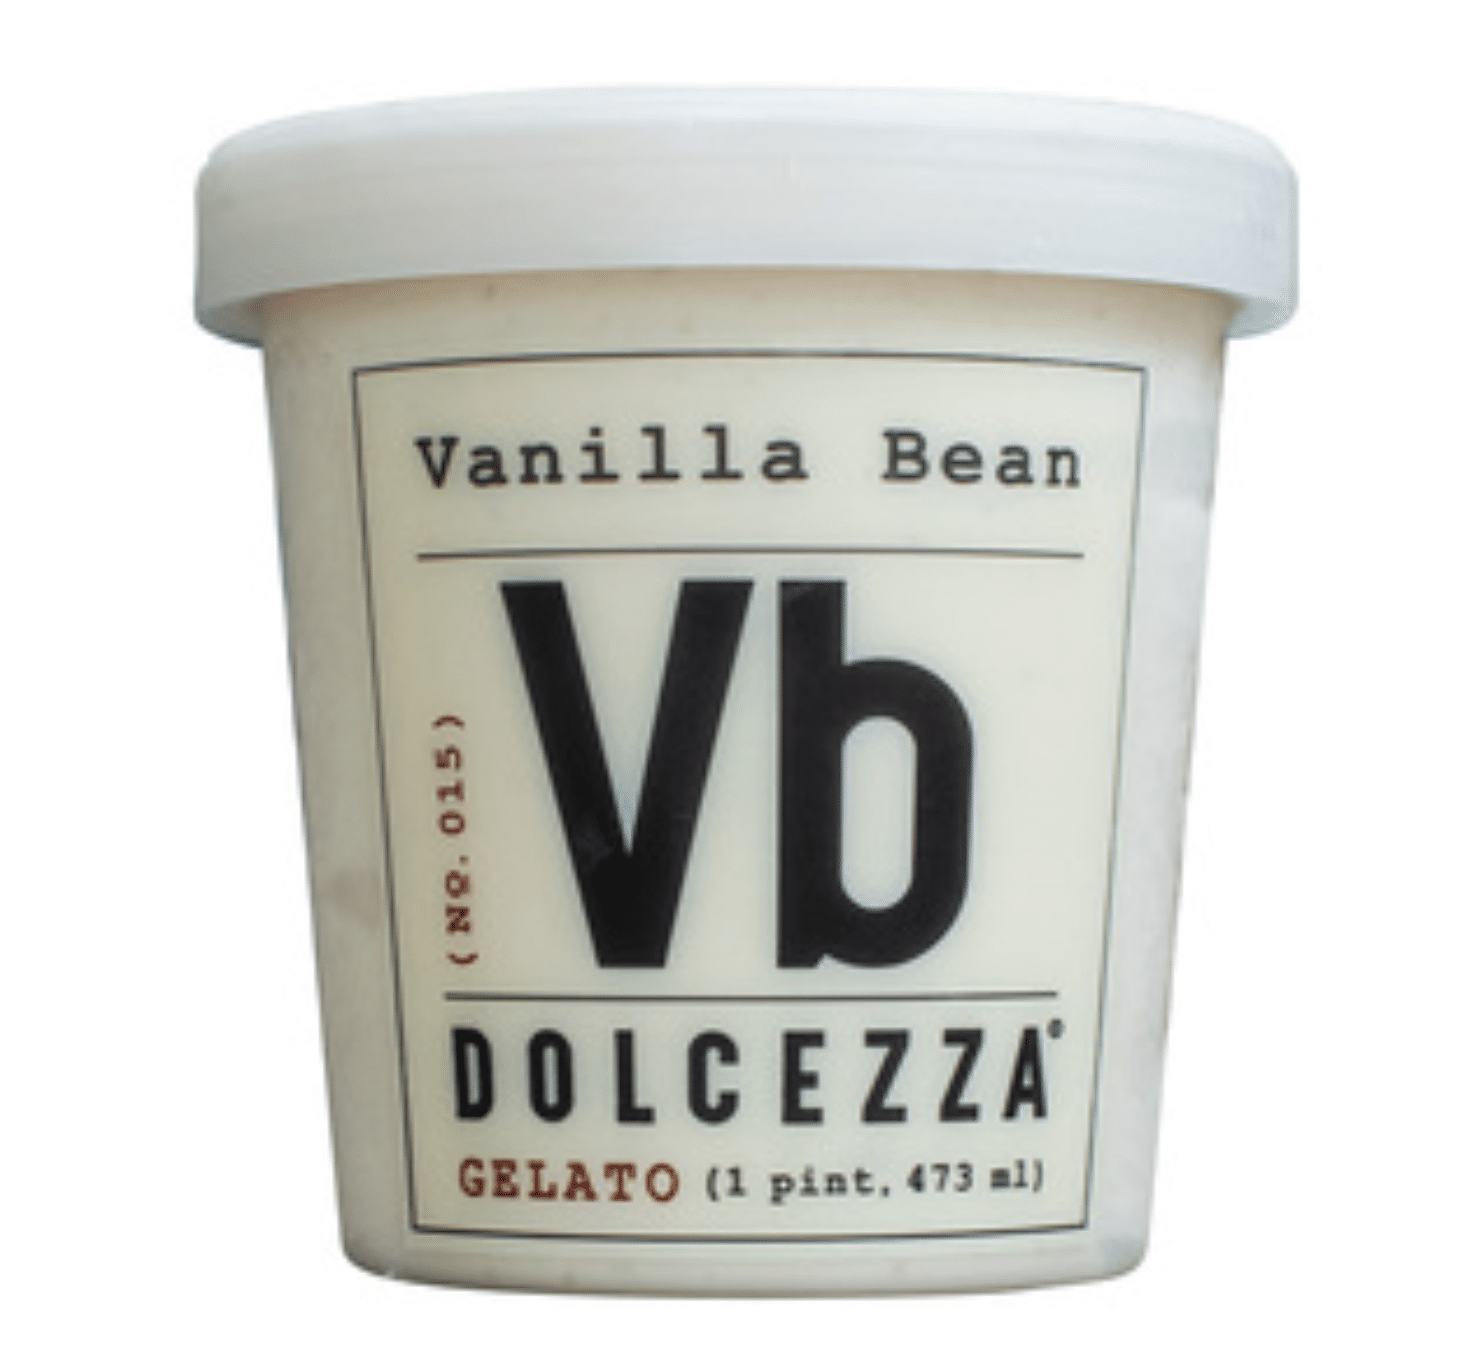 Vanilla Bean gelato pint